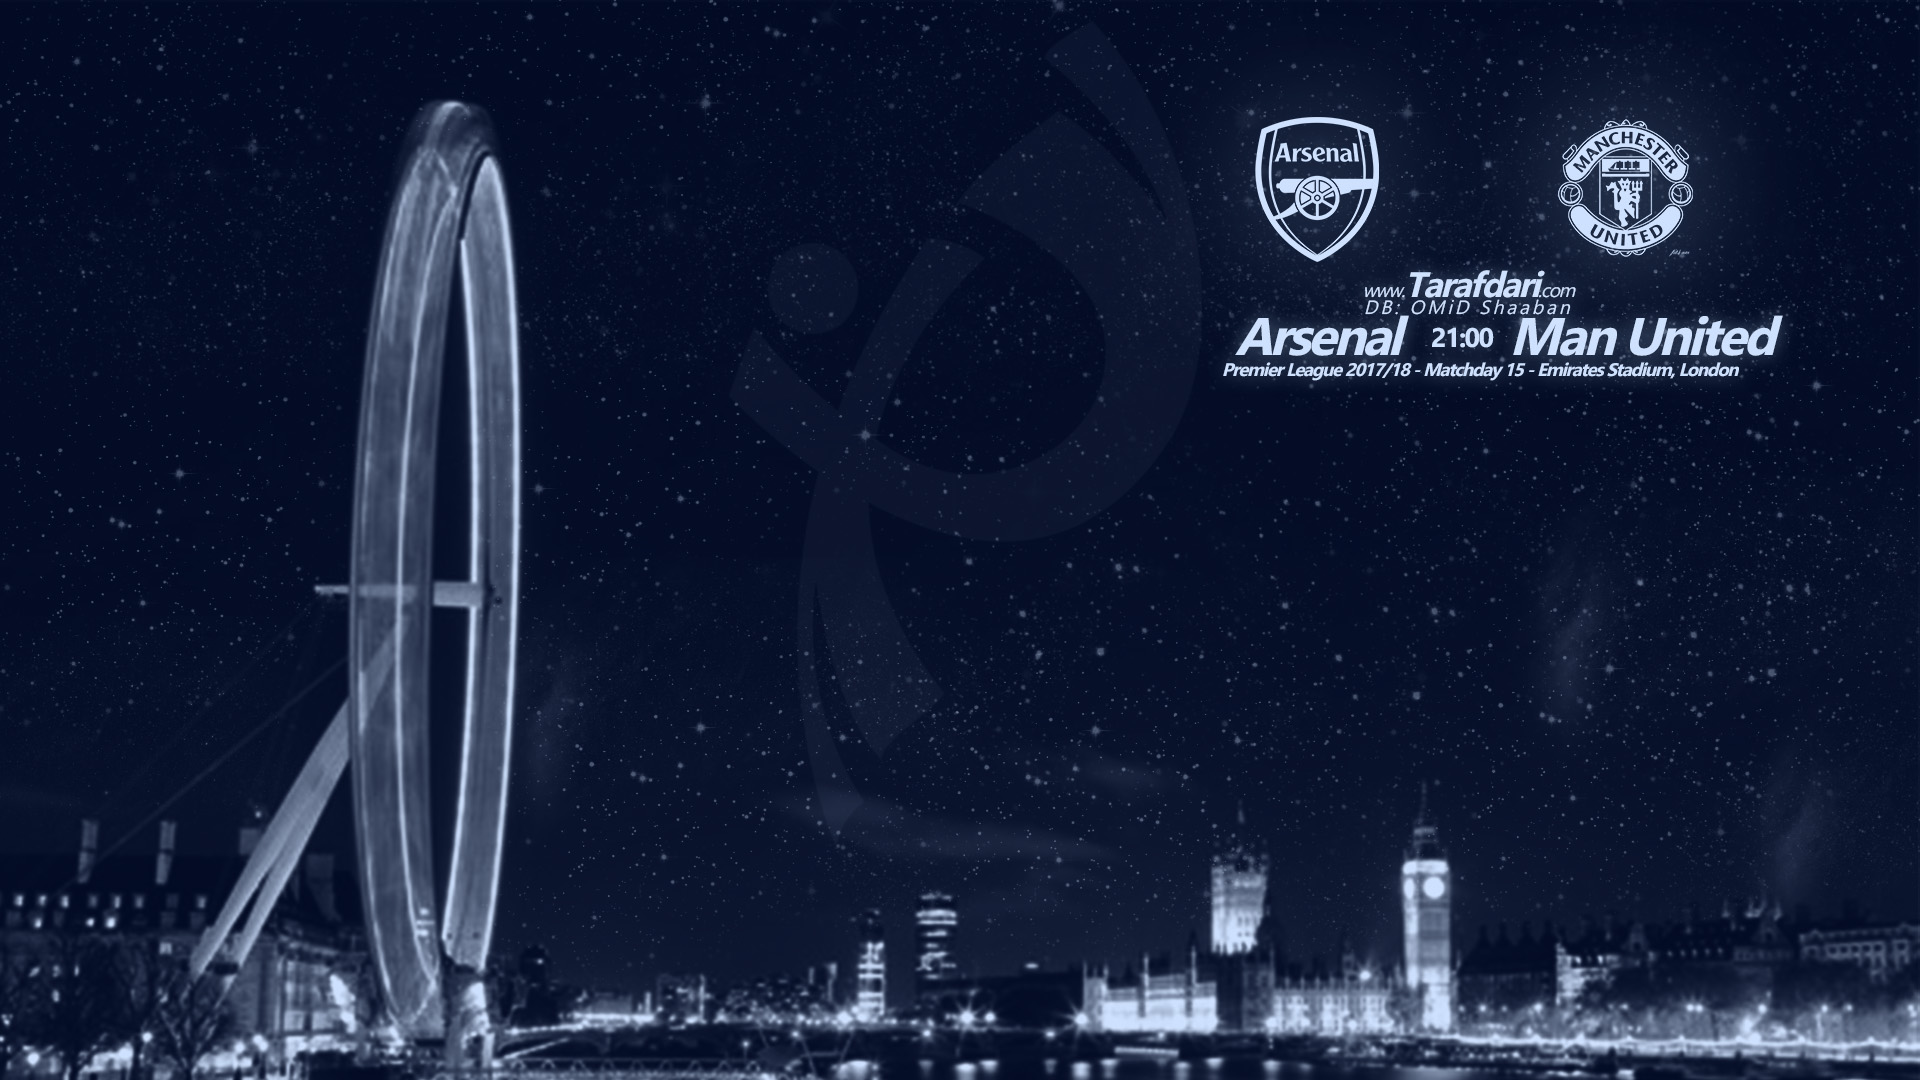 آرسنال و منچستریونایتد - هفته پانزدهم - لیگ برتر جزیره - ورزشگاه امارات - شهر لندن